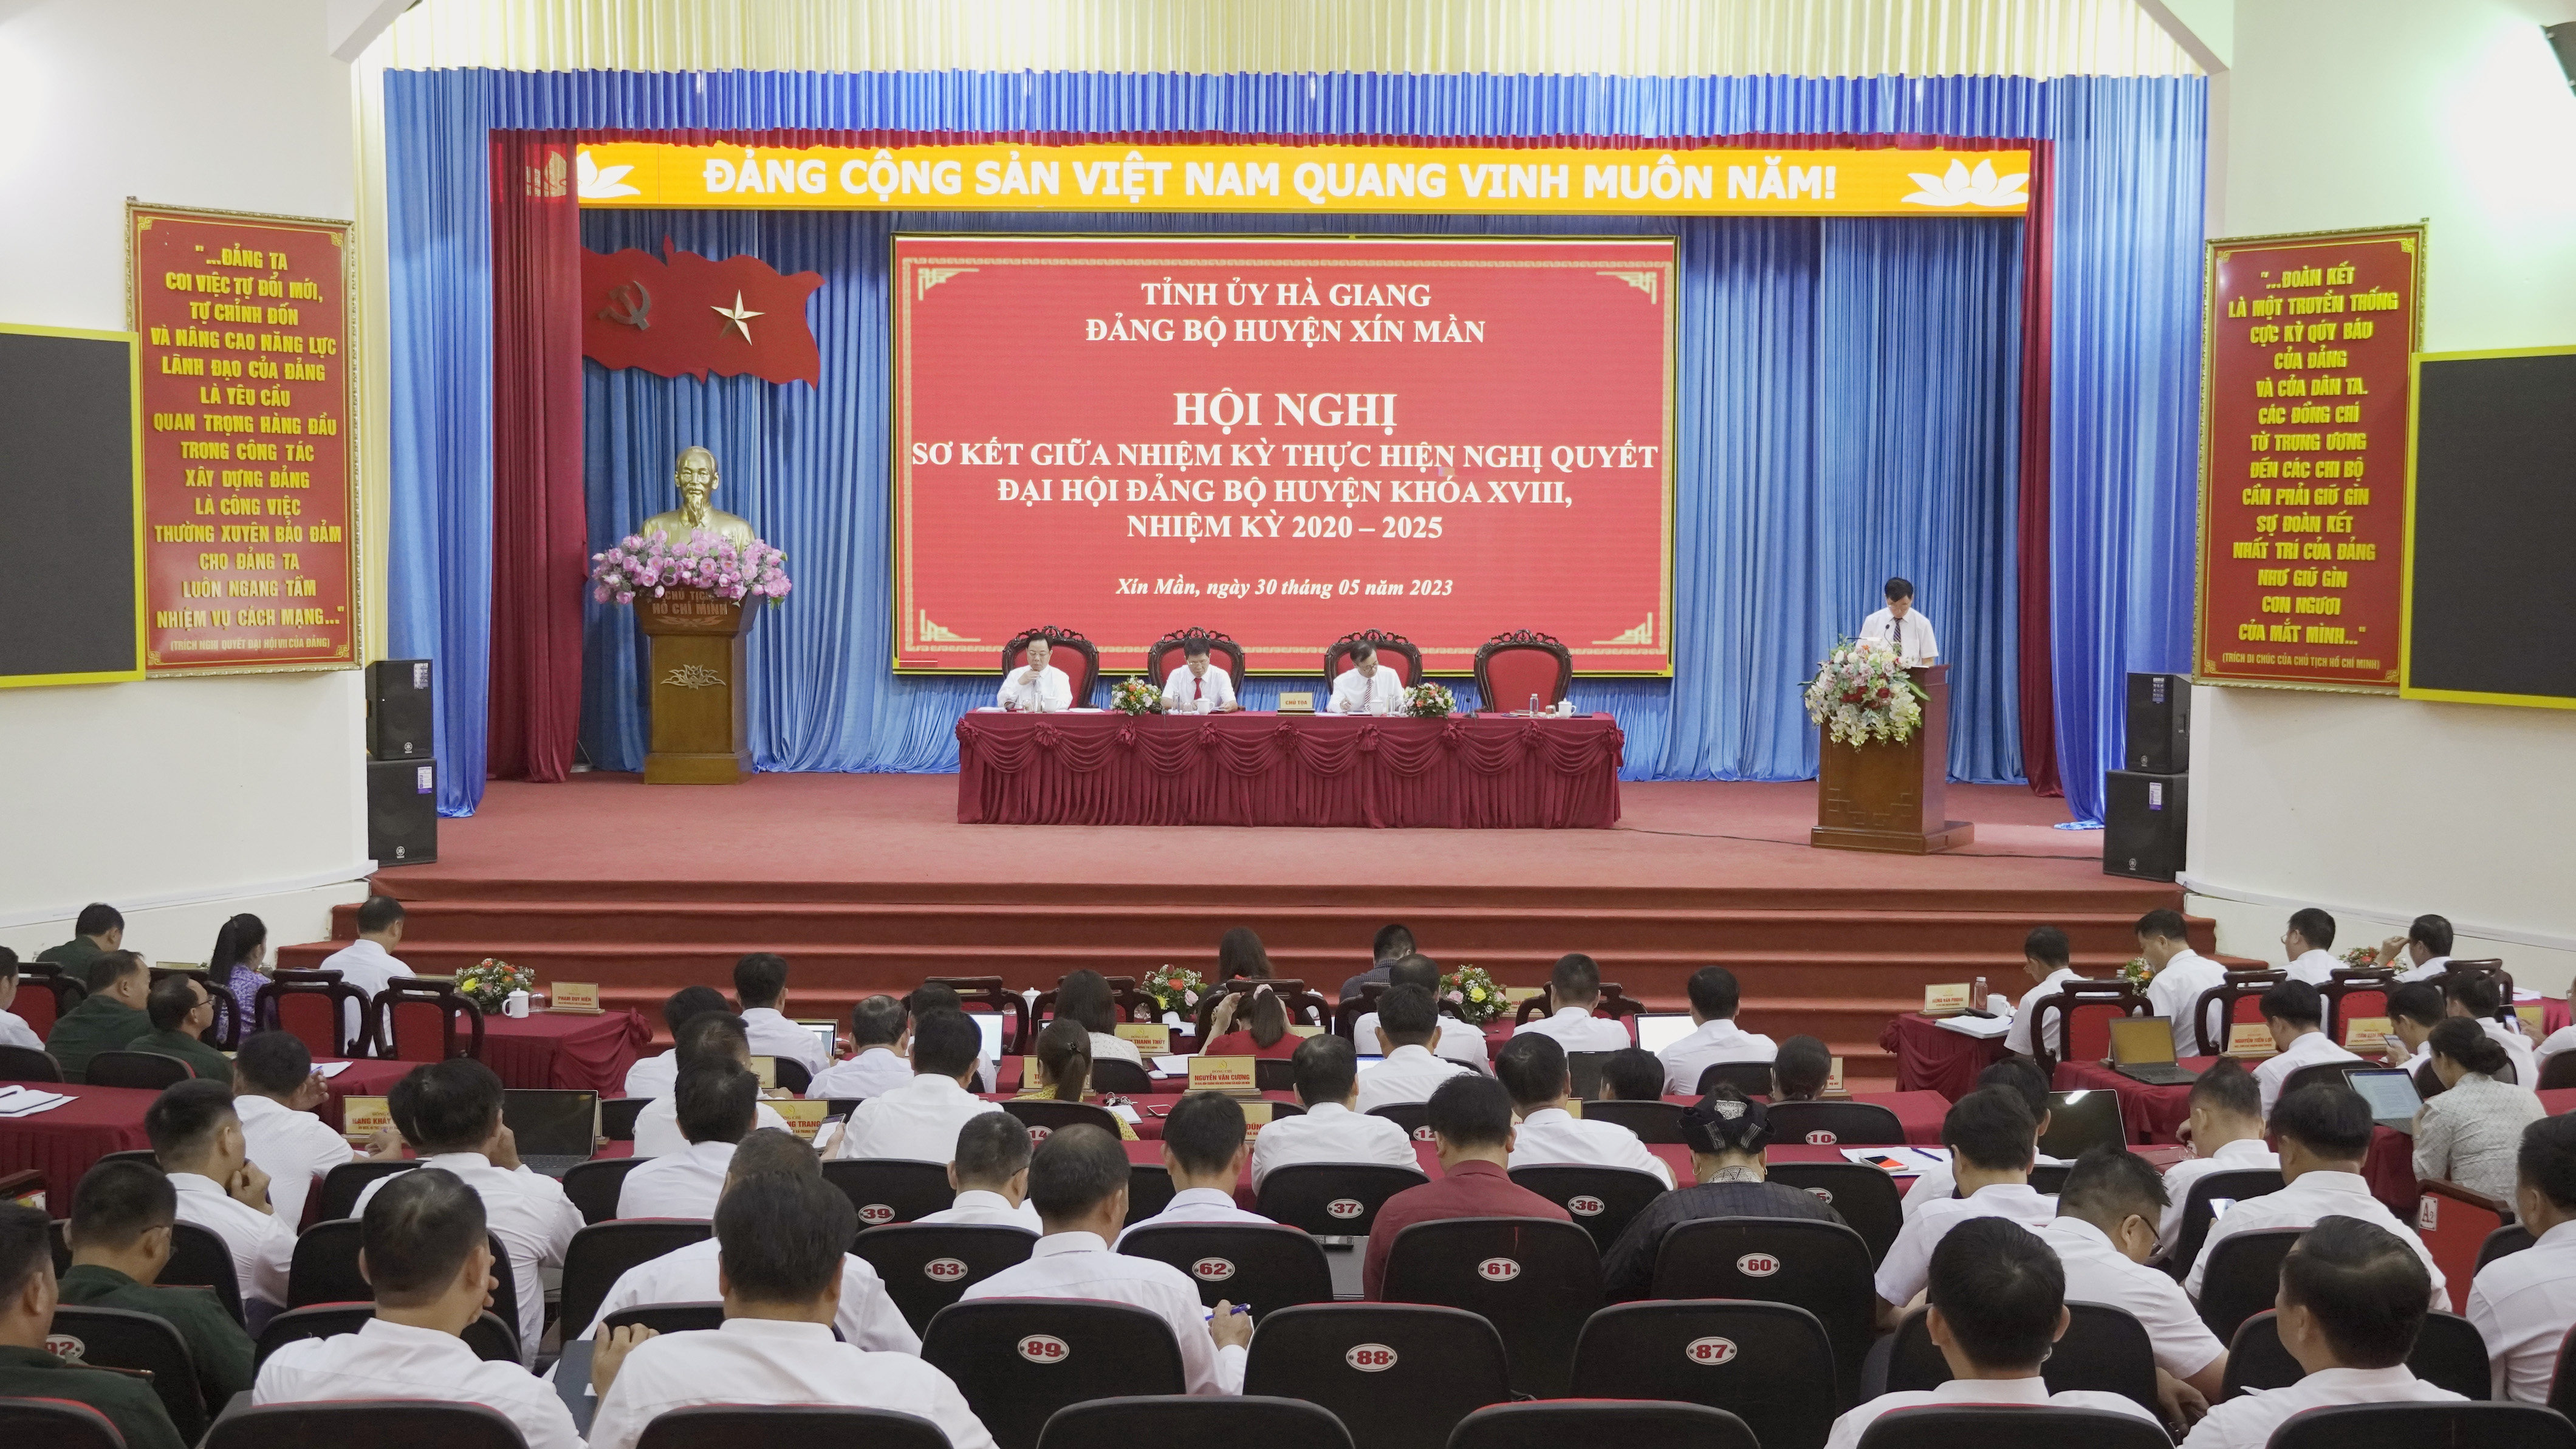 Hội nghị sơ kết giữa nhiệm kỳ thực hiện Nghị quyết Đại hội Đảng bộ huyện Xín Mần khóa XVIII, nhiệm kỳ 2020-2025